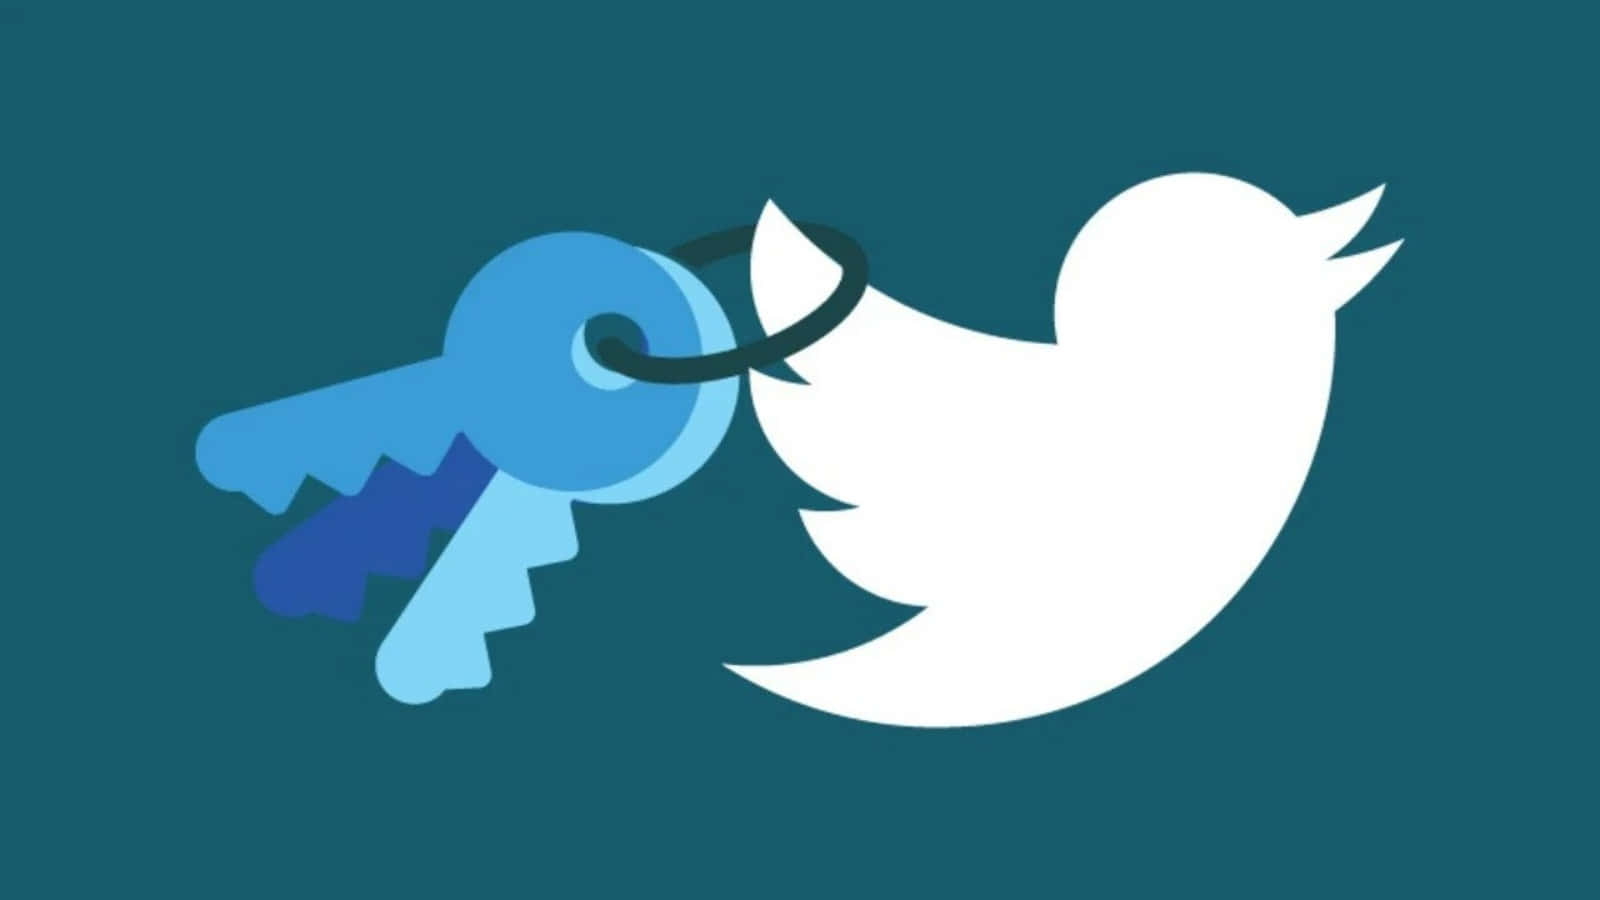 Twitterschlüssel Und Vogel-logo